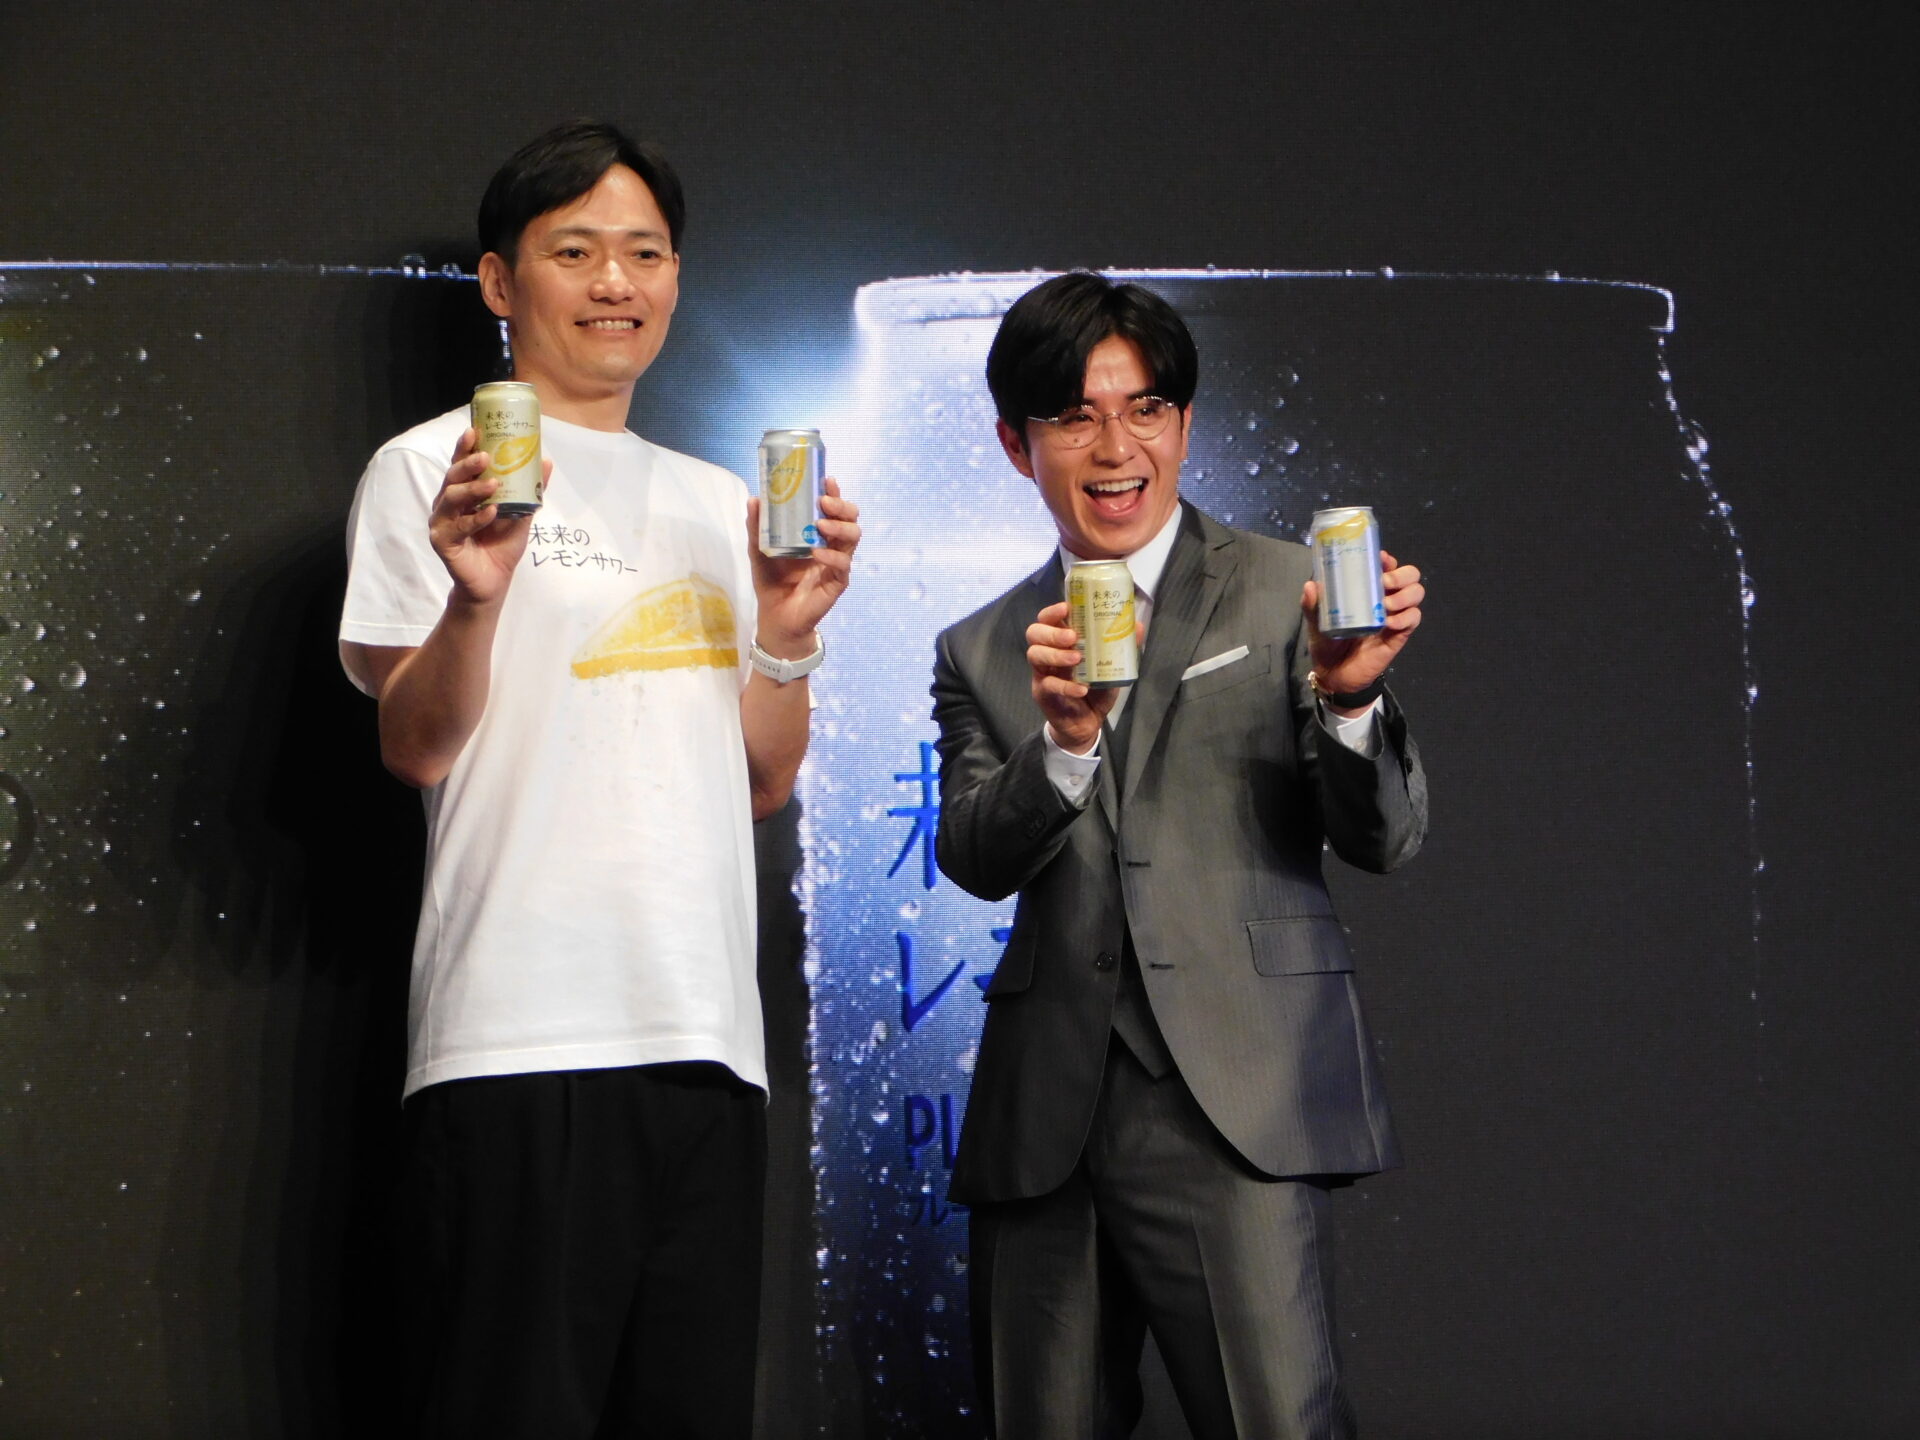 ６月３日、東京・原宿で開催された発売記念イベントに登壇したアサヒビールのかじうらみずほ・マーケティング本部長とタレントの藤森慎吾氏の写真です